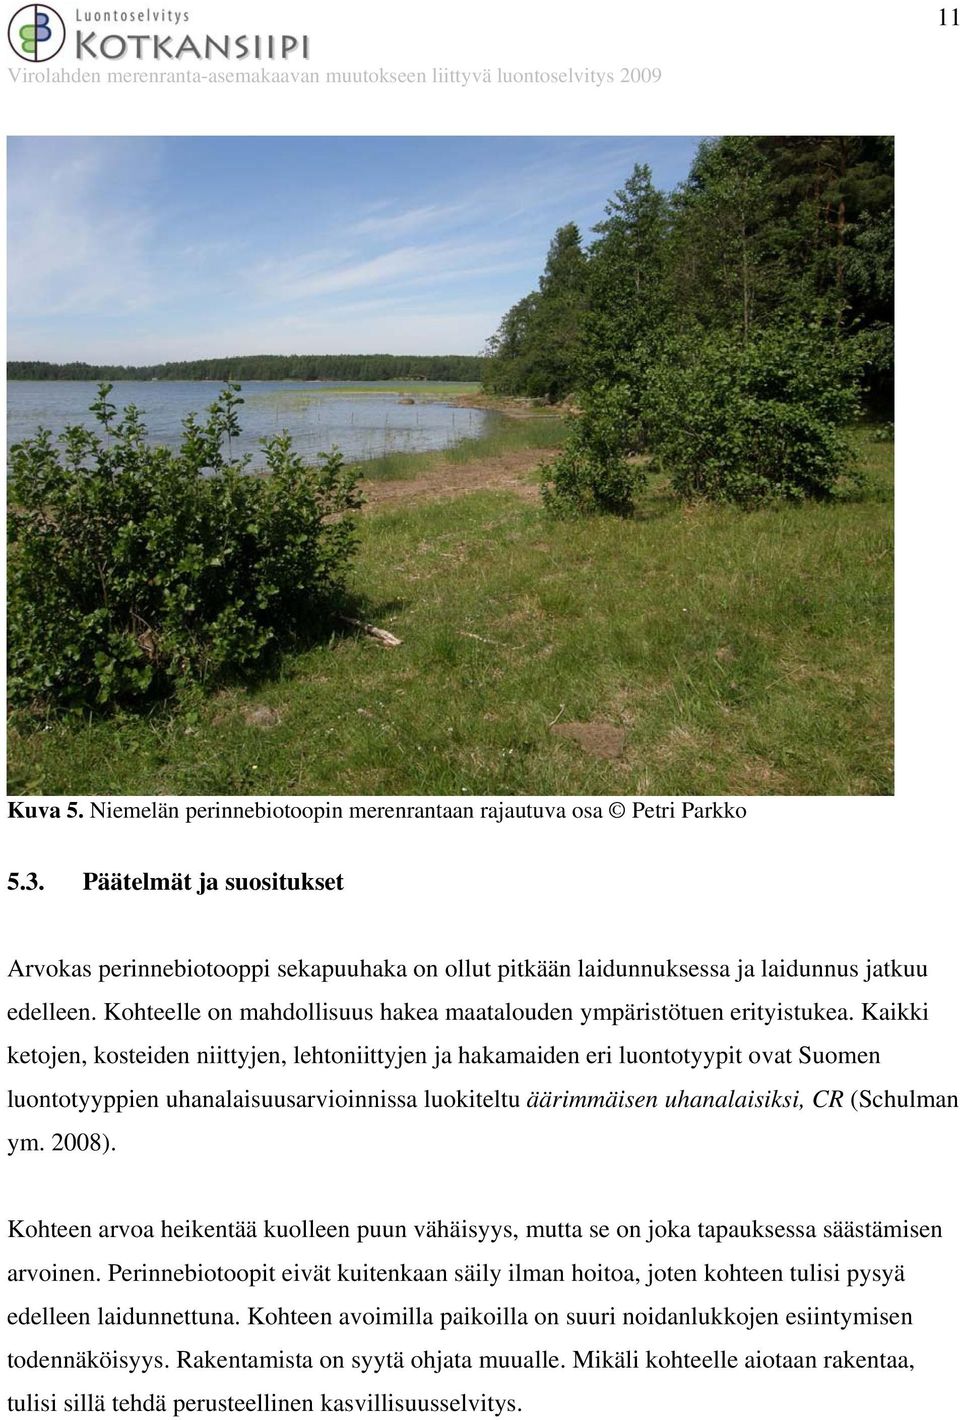 Kaikki ketojen, kosteiden niittyjen, lehtoniittyjen ja hakamaiden eri luontotyypit ovat Suomen luontotyyppien uhanalaisuusarvioinnissa luokiteltu äärimmäisen uhanalaisiksi, CR (Schulman ym. 2008).